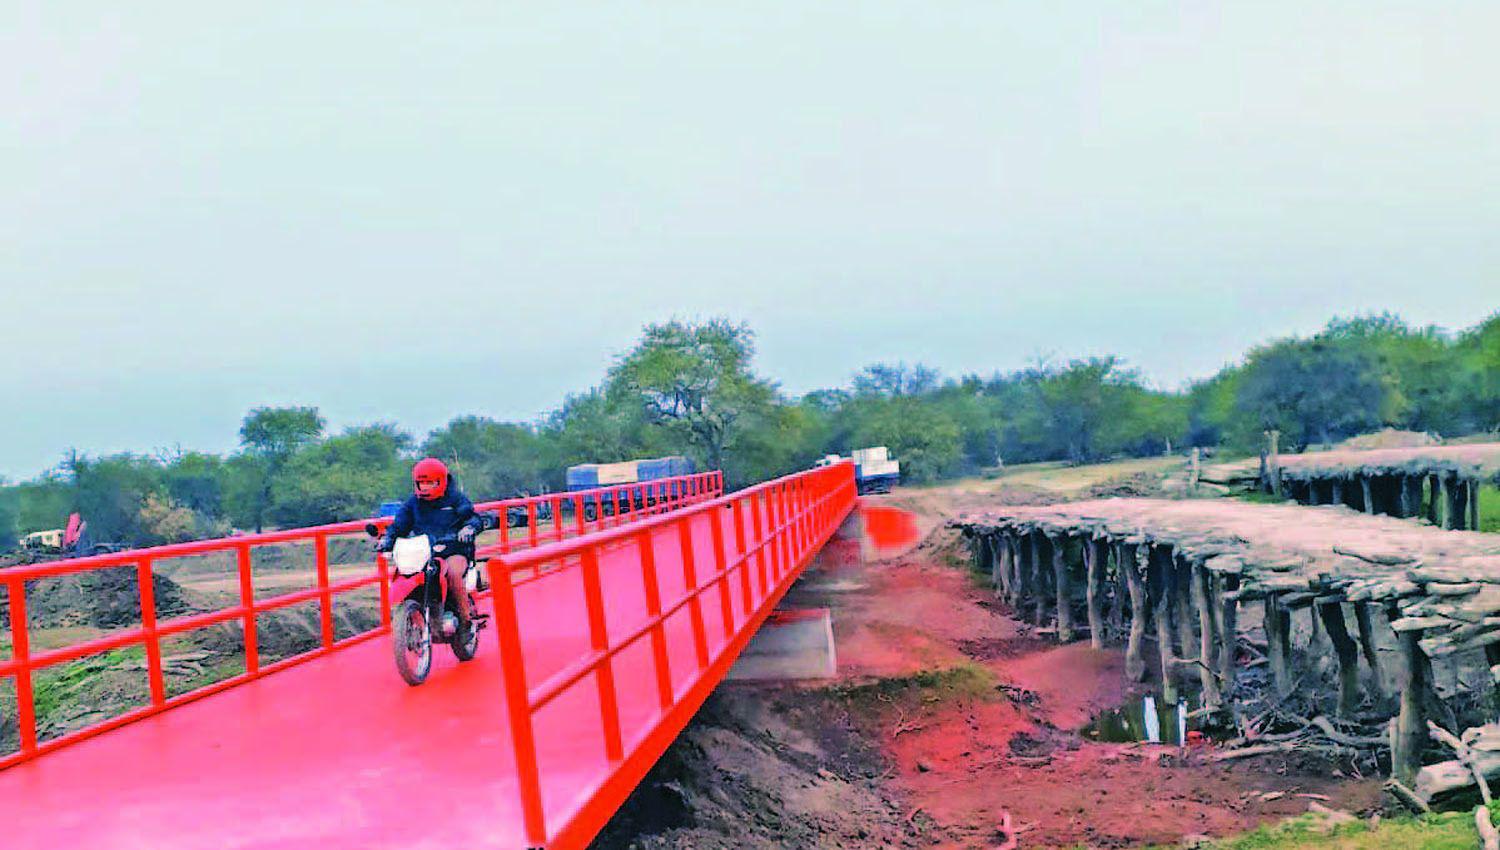 Vialidad provincial construyoacute un puente metaacutelico sobre el riacuteo Utis